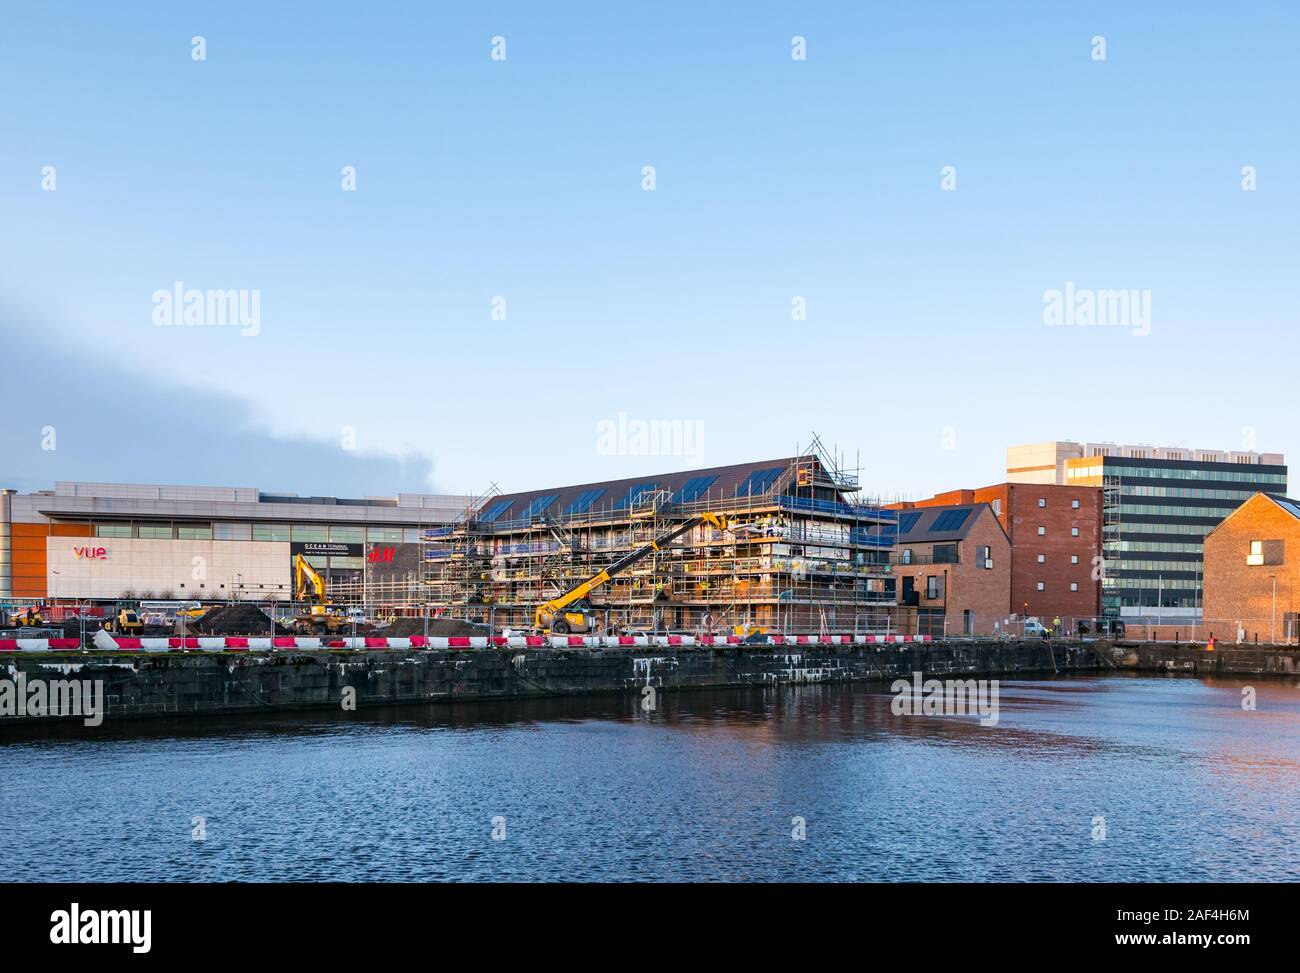 Die Bauarbeiten am Waterfront Plaza Wohnanlage von Cala Wohnungen, Victoria Quay, Leith, Edinburgh, Schottland, Großbritannien Stockfoto